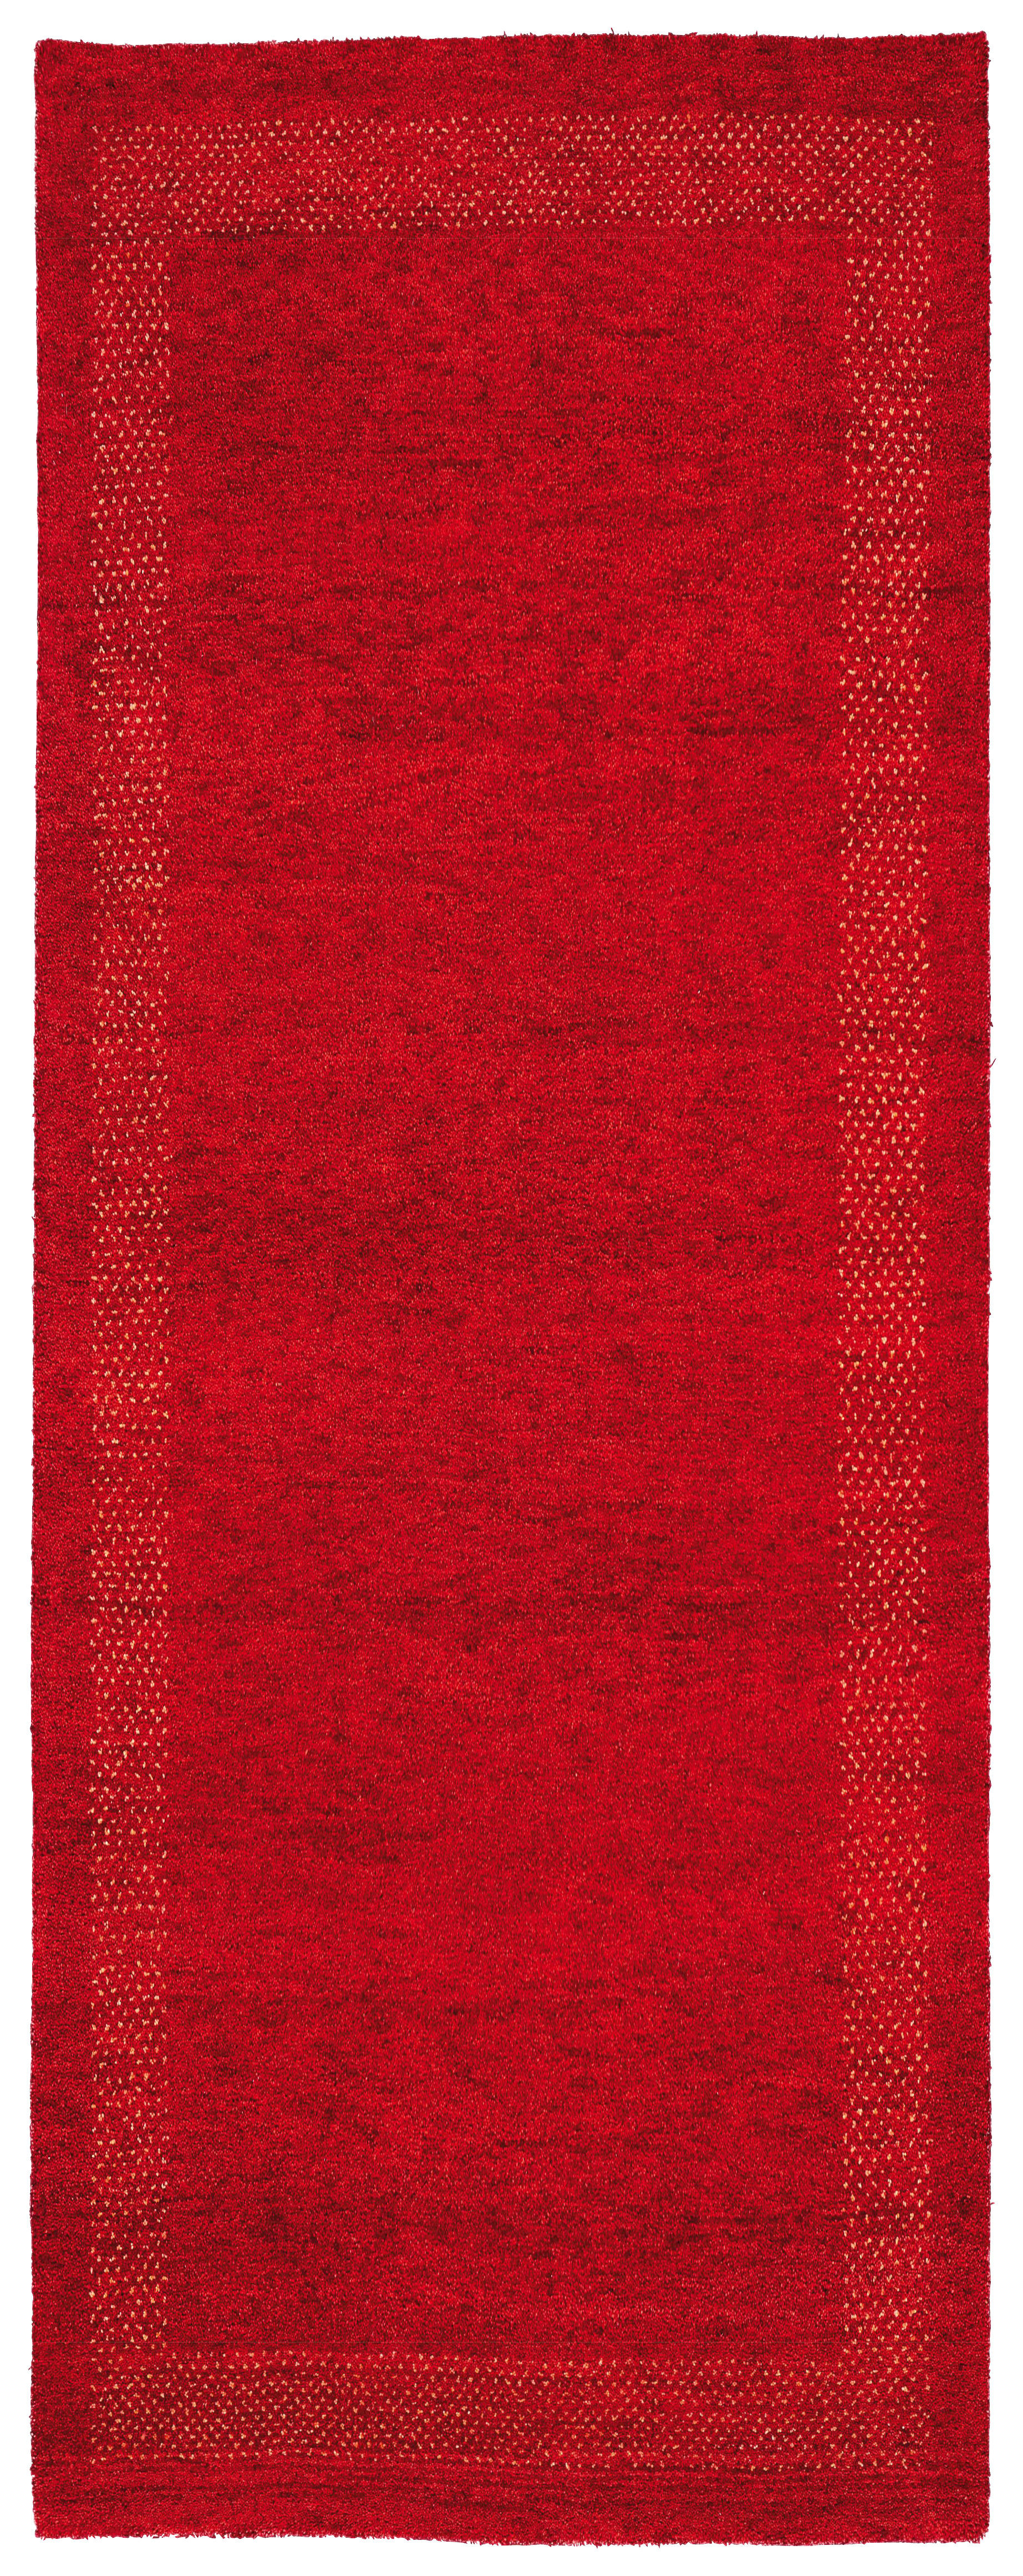 Wollteppich  80/250 cm  Rot  - Rot, KONVENTIONELL, Naturmaterialien/Textil (80/250cm) - Cazaris